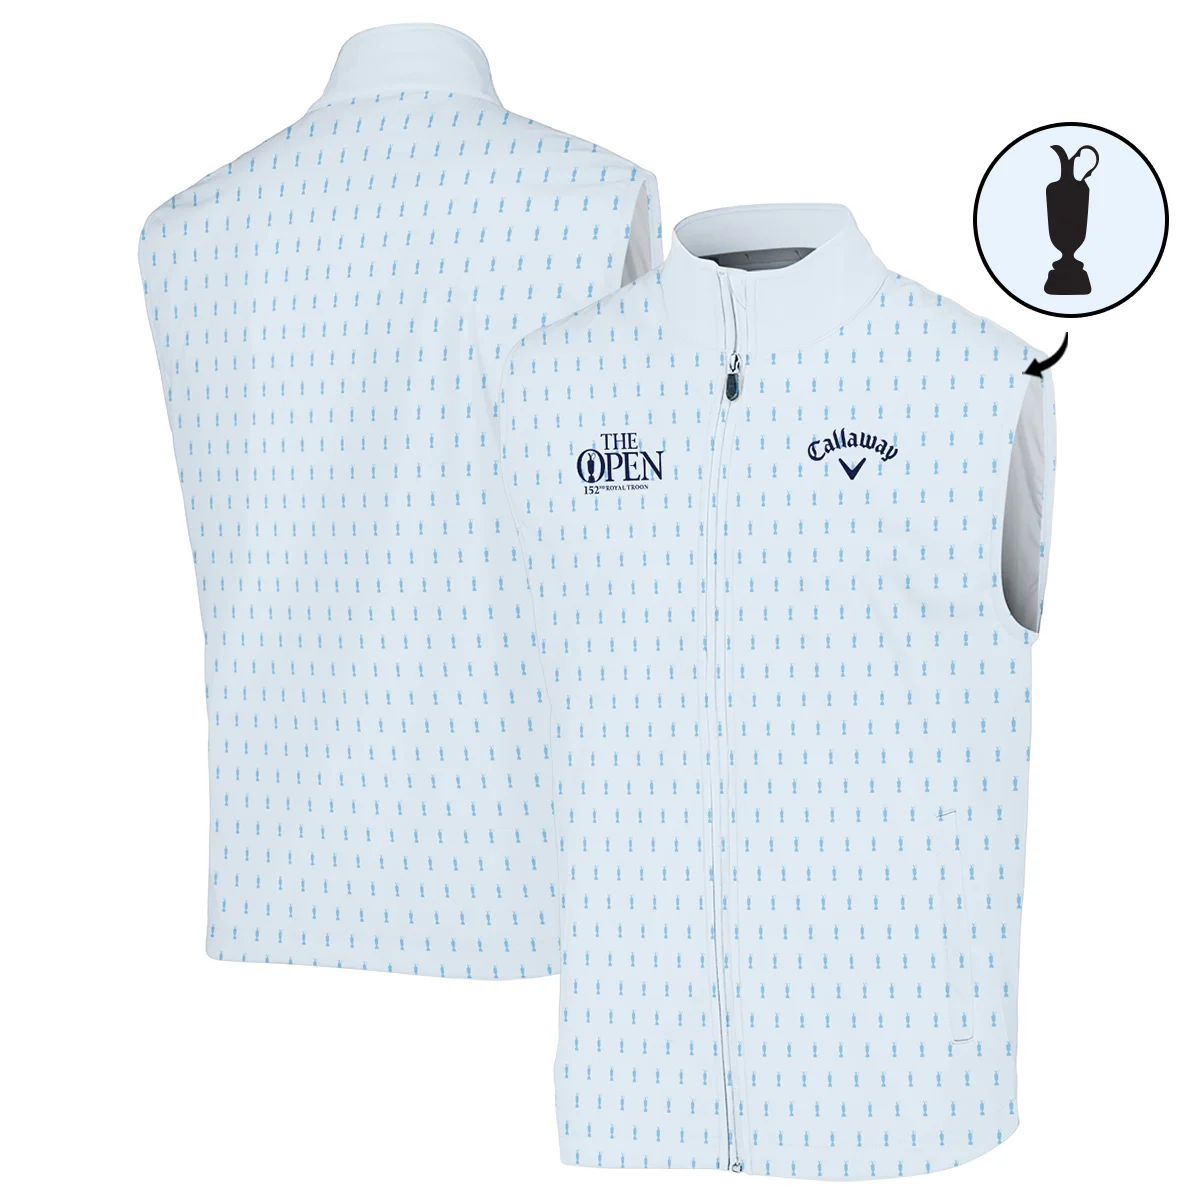 Golf Sport Light Blue Pattern Cup 152nd Open Championship Callaway Zipper Polo Shirt All Over Prints QTTOP160624A01CLWZPL